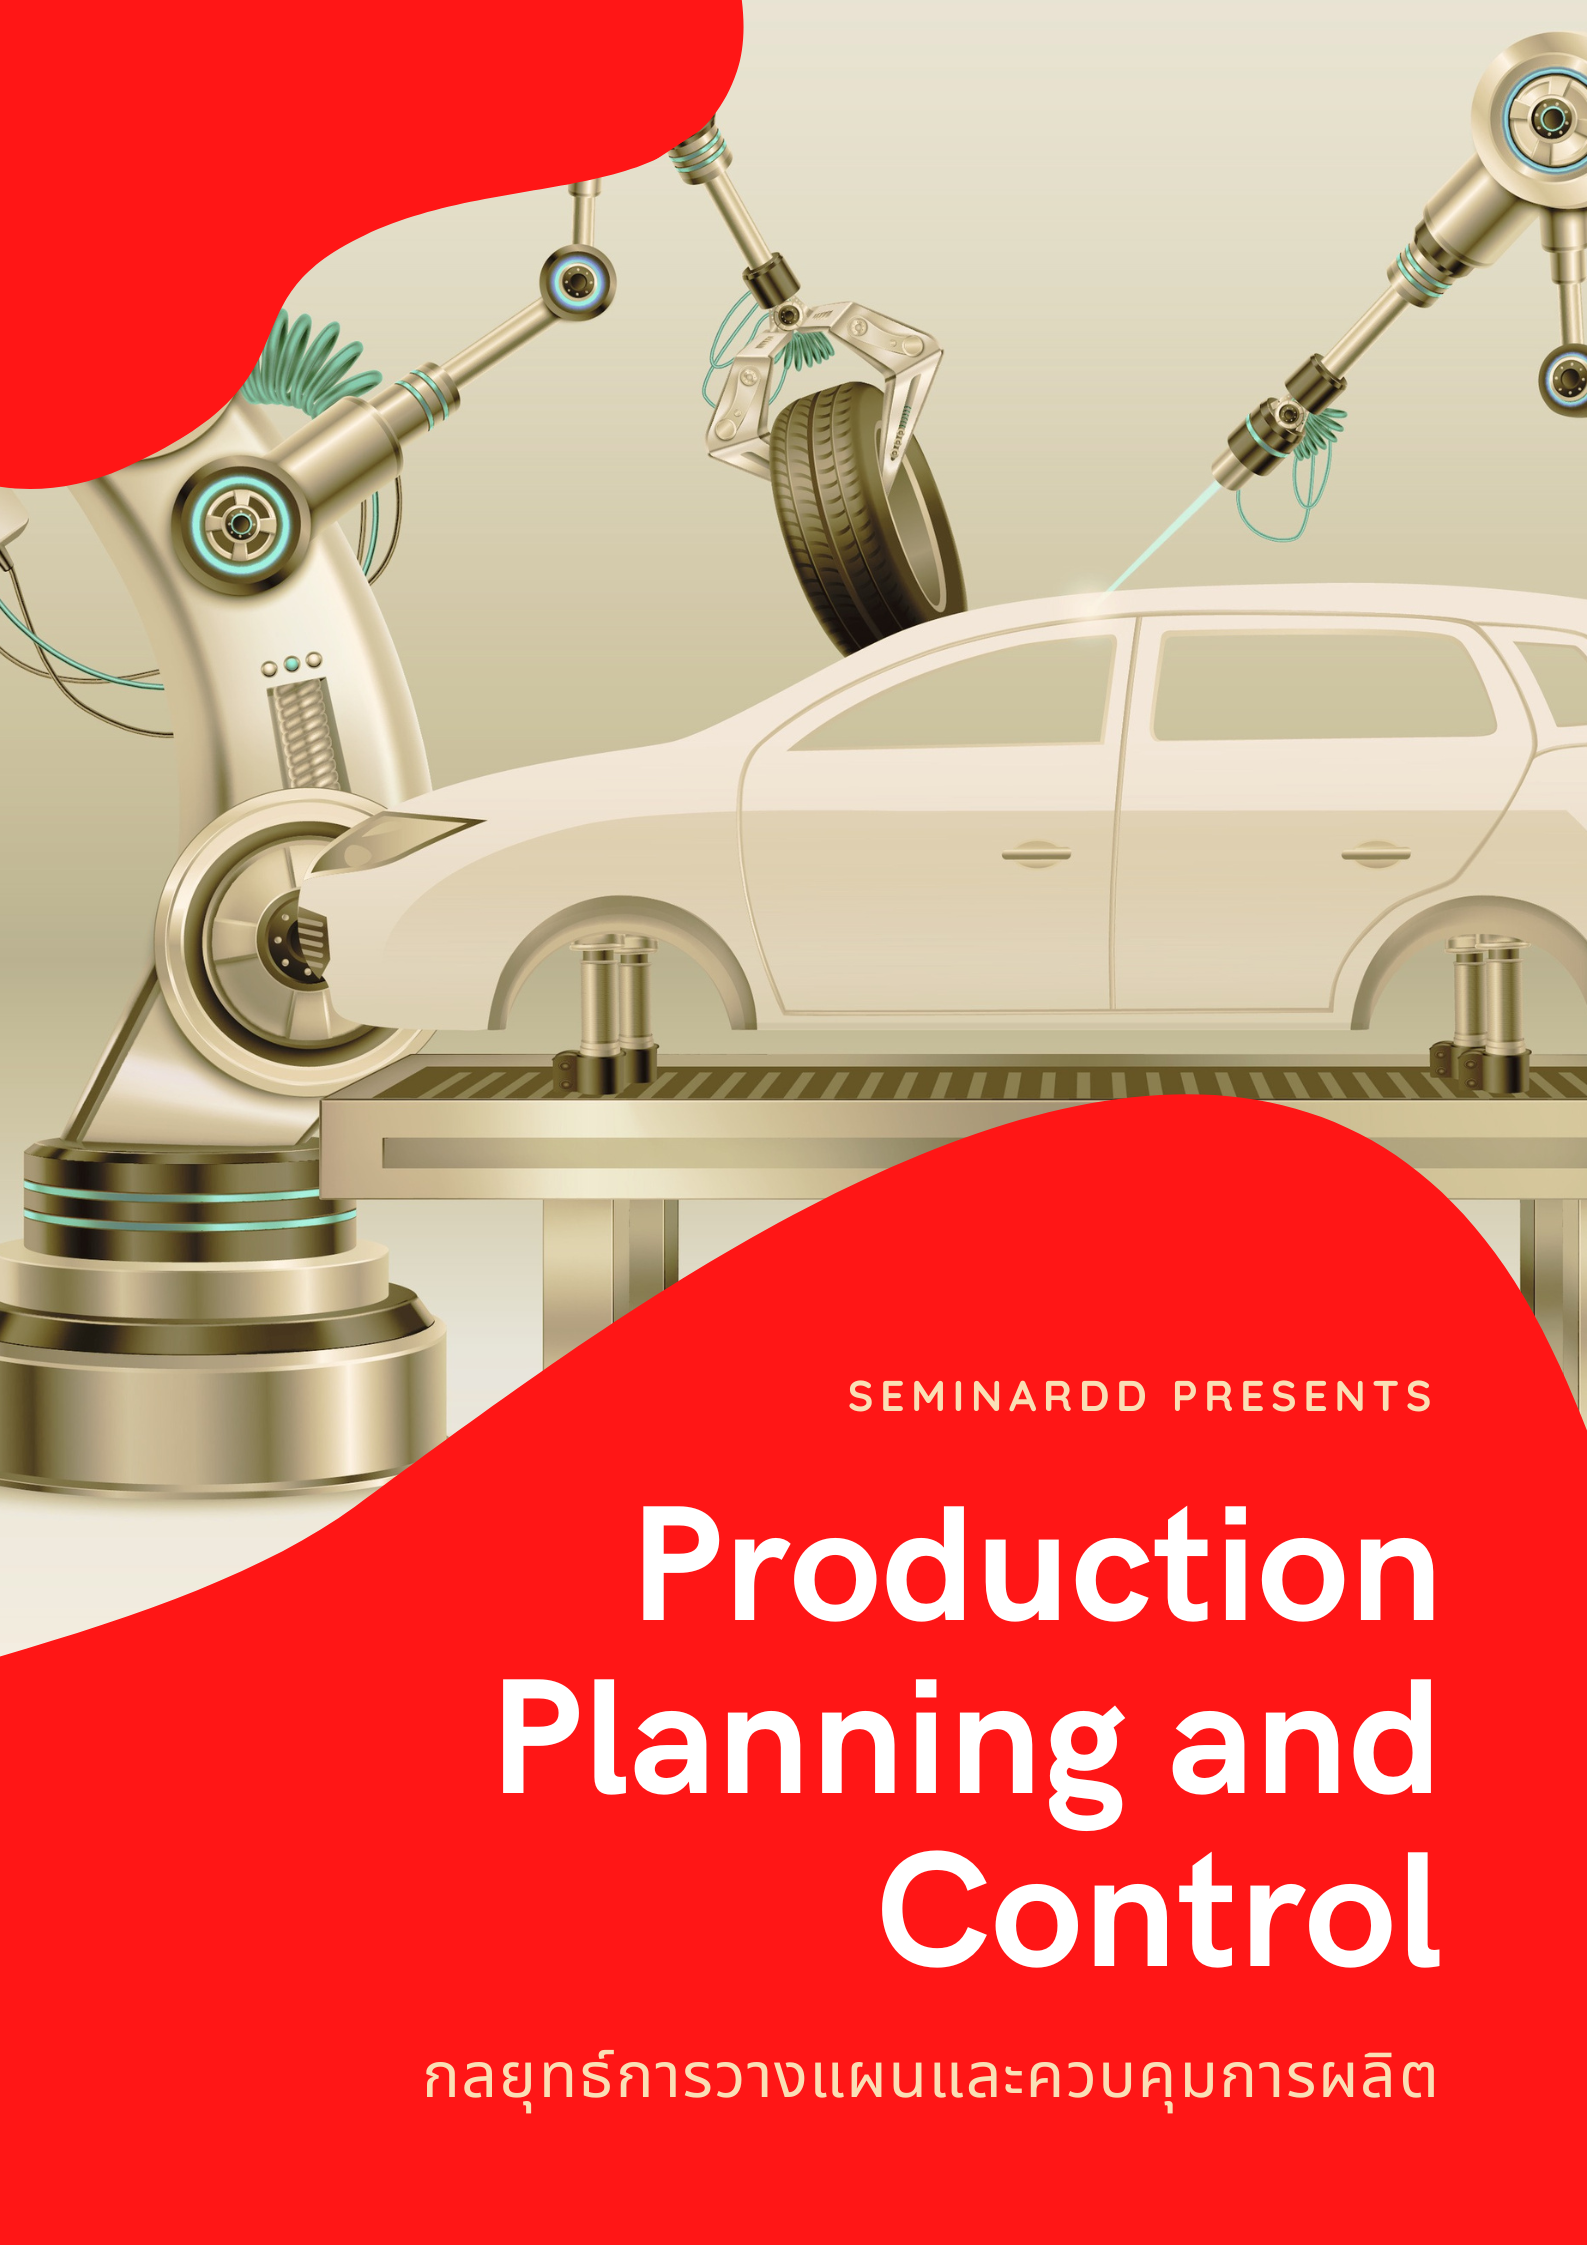 กลยุทธ์การวางแผนและควบคุมการผลิต (Production Planning and Control)